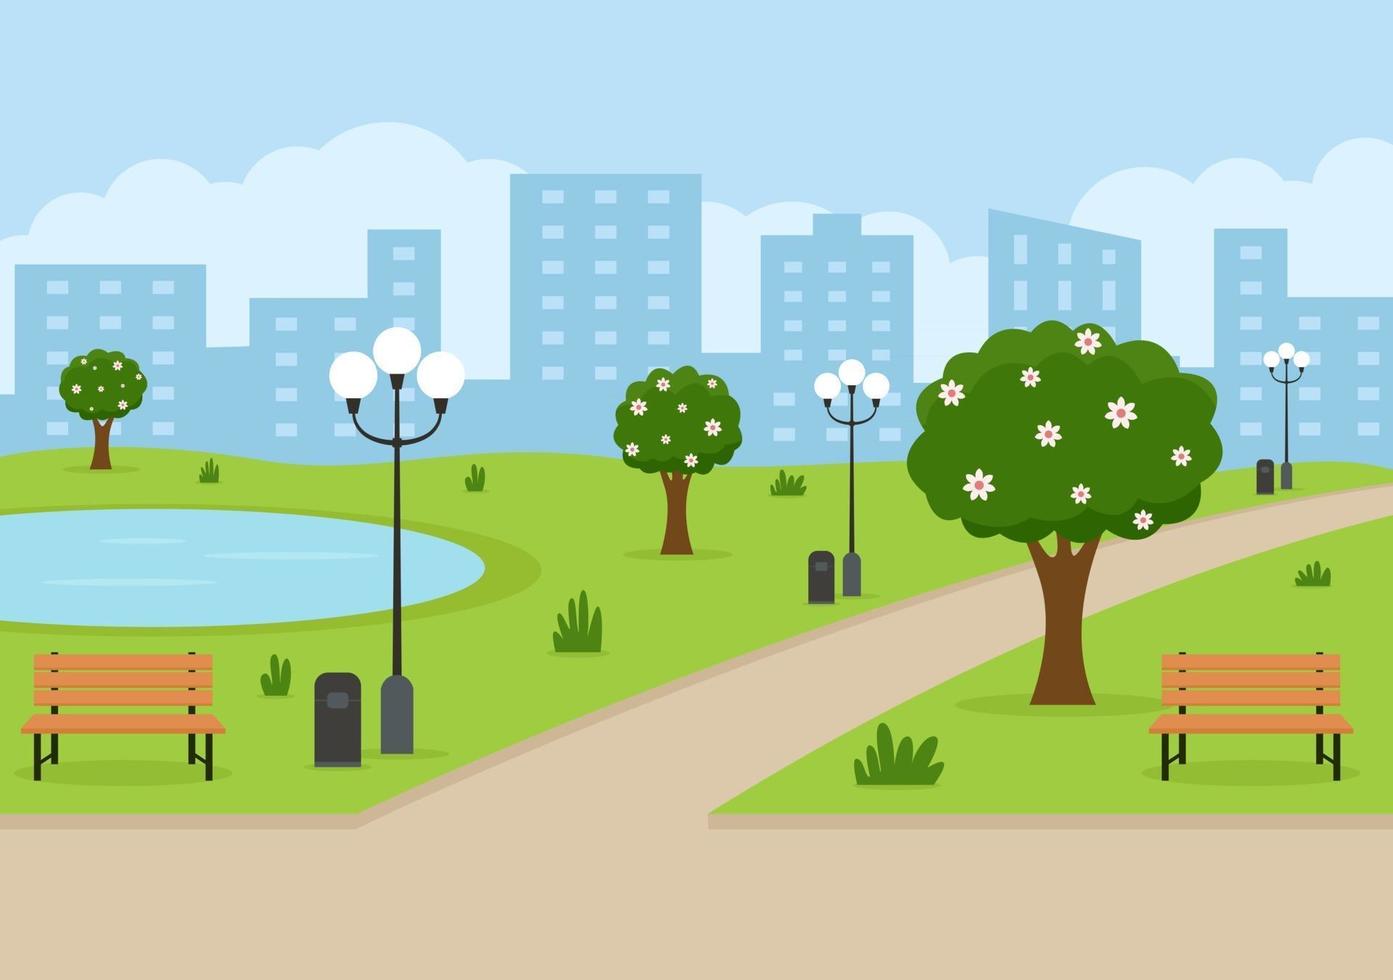 Stadtparkillustration für Leute, die Sport treiben, sich entspannen, spielen oder sich mit grünem Baum und Rasen erholen. Landschaft urbaner Hintergrund vektor